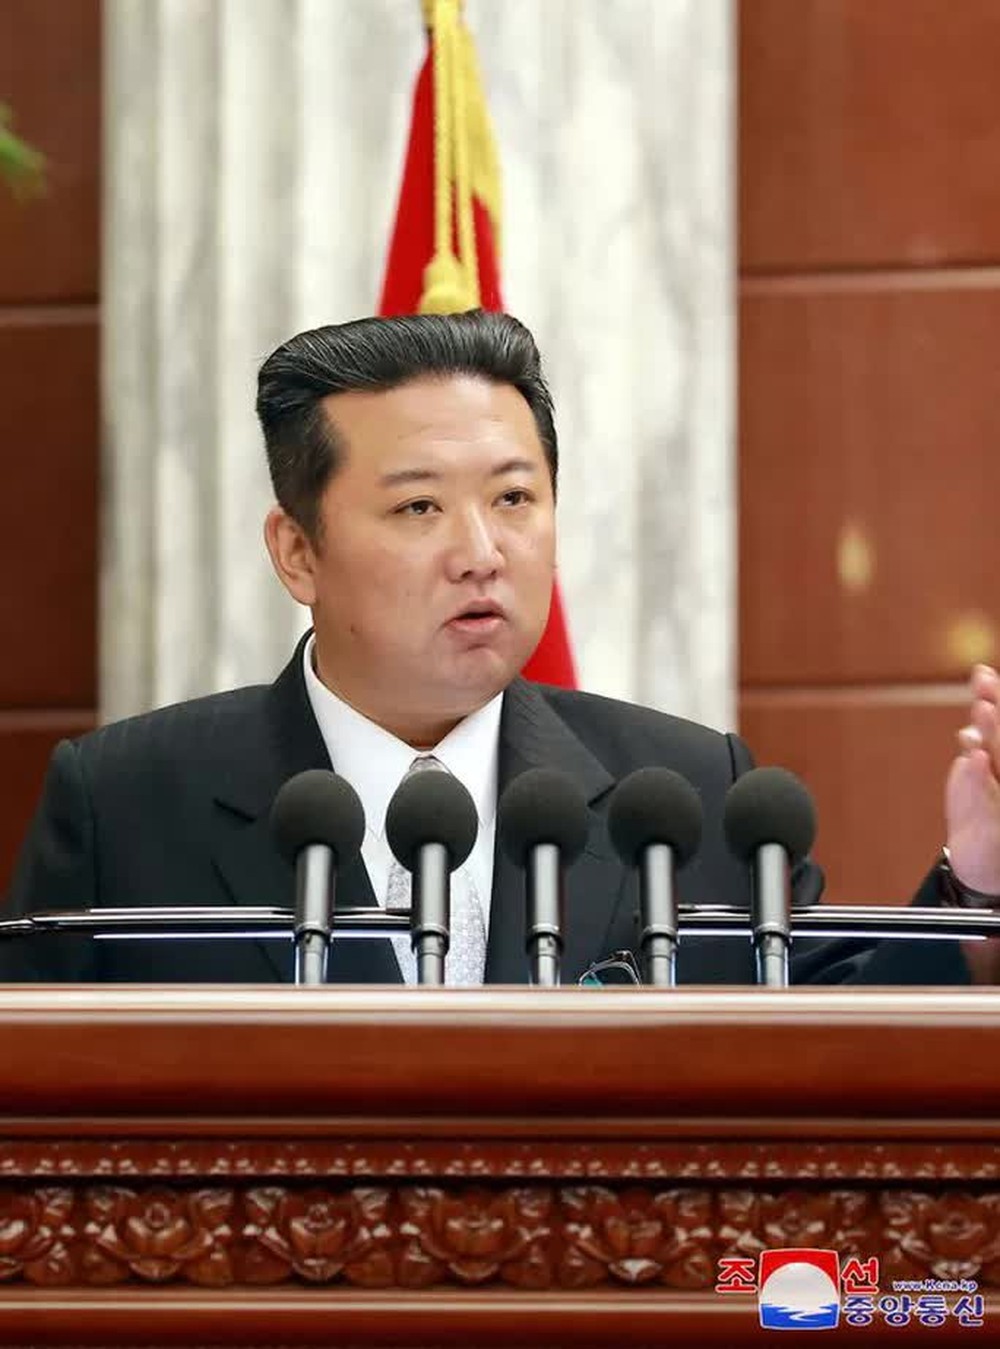  Quân đội Triều Tiên được kêu gọi bảo vệ ông Kim Jong-un bằng cả mạng sống  - Ảnh 1.